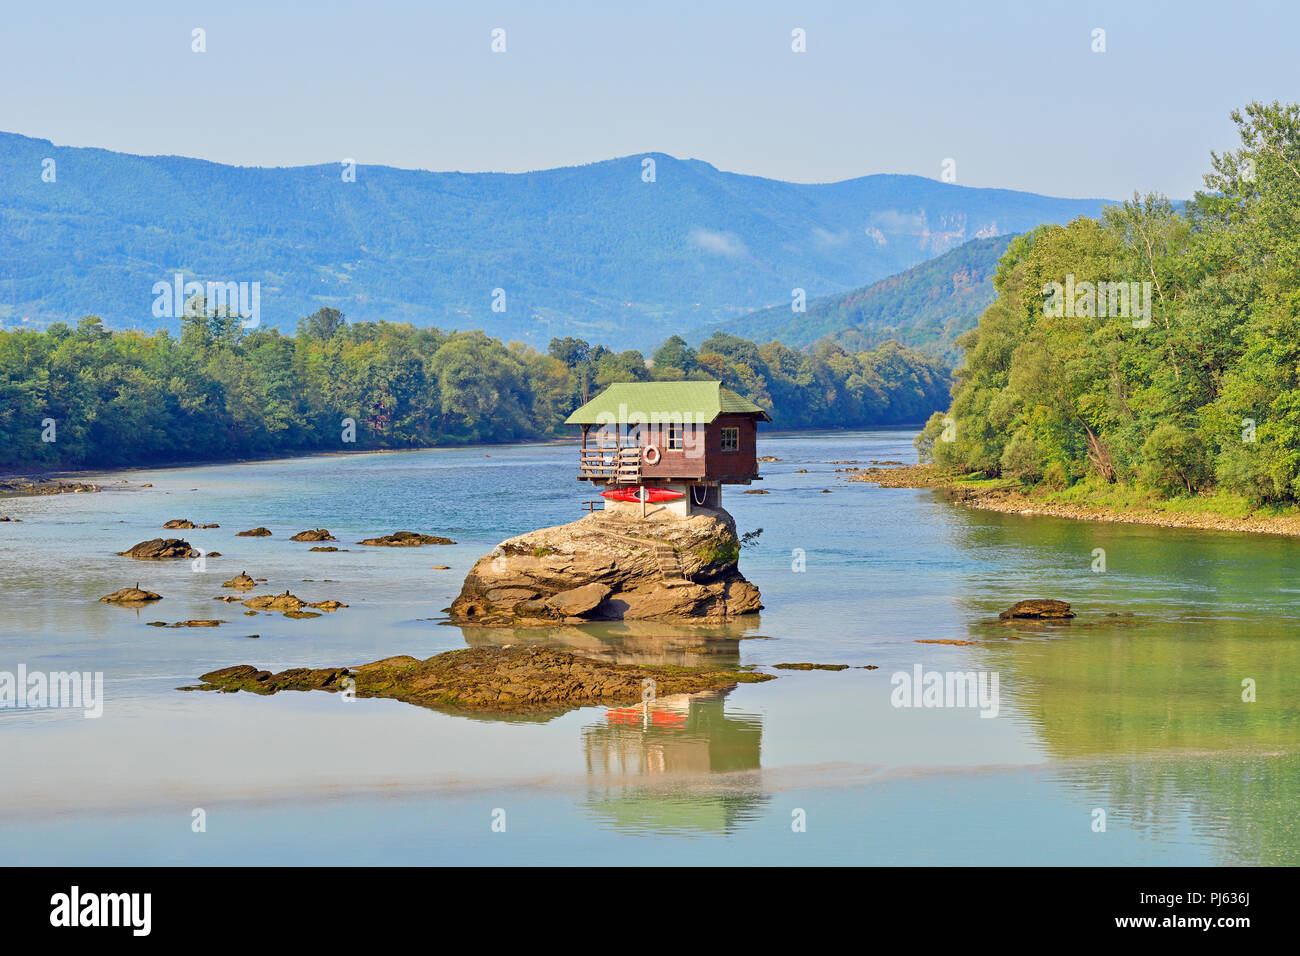 House on the River Drina, Bajina Basta, Serbia Stock Photo